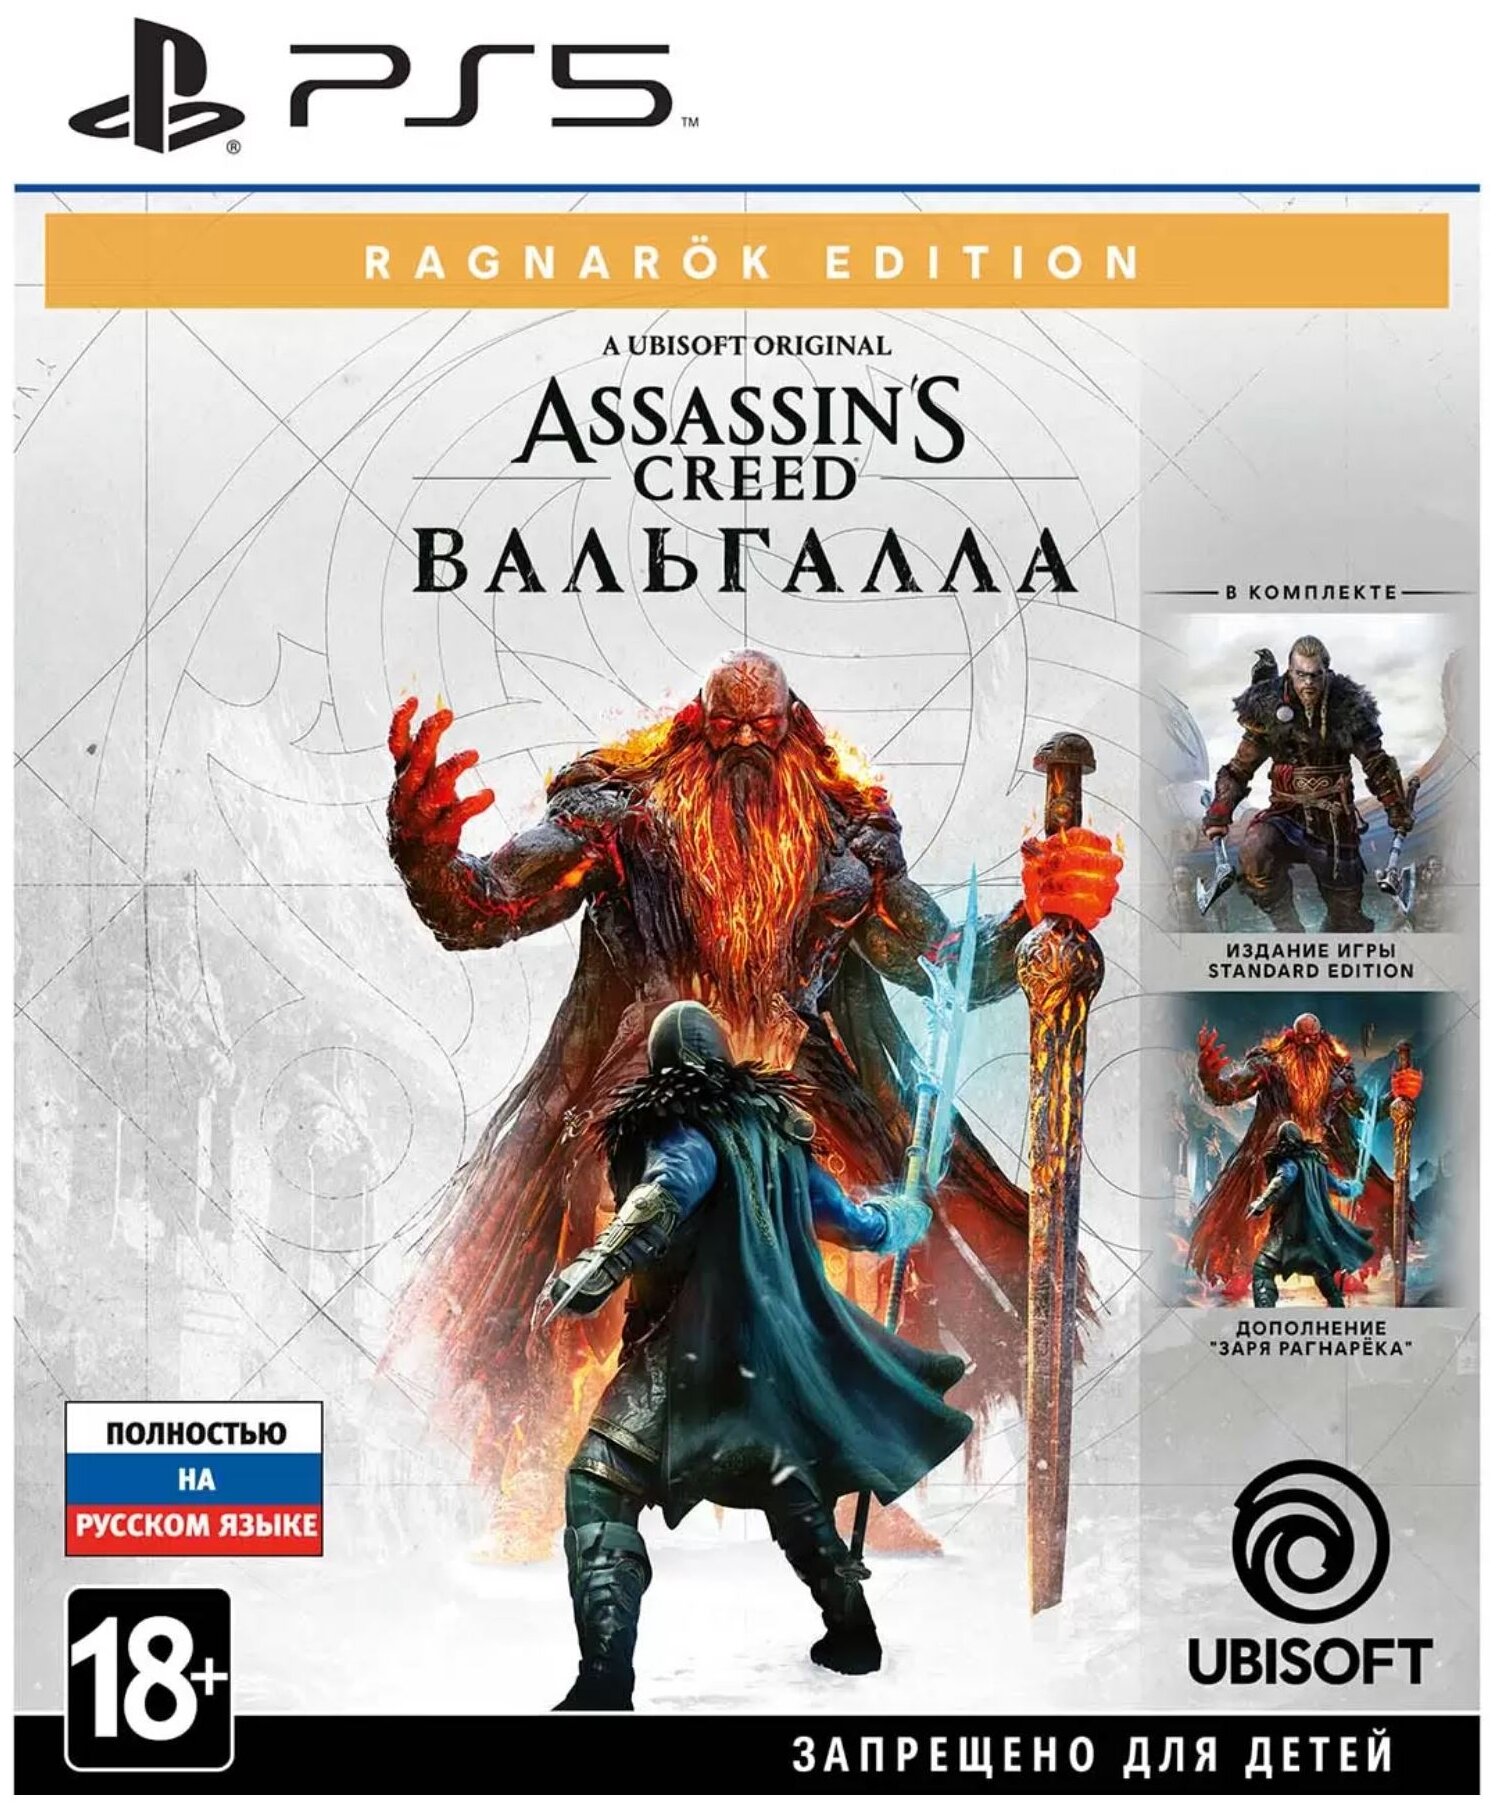  PS5 Assassin's Creed: . Ragnar?k Edition, ( ),  